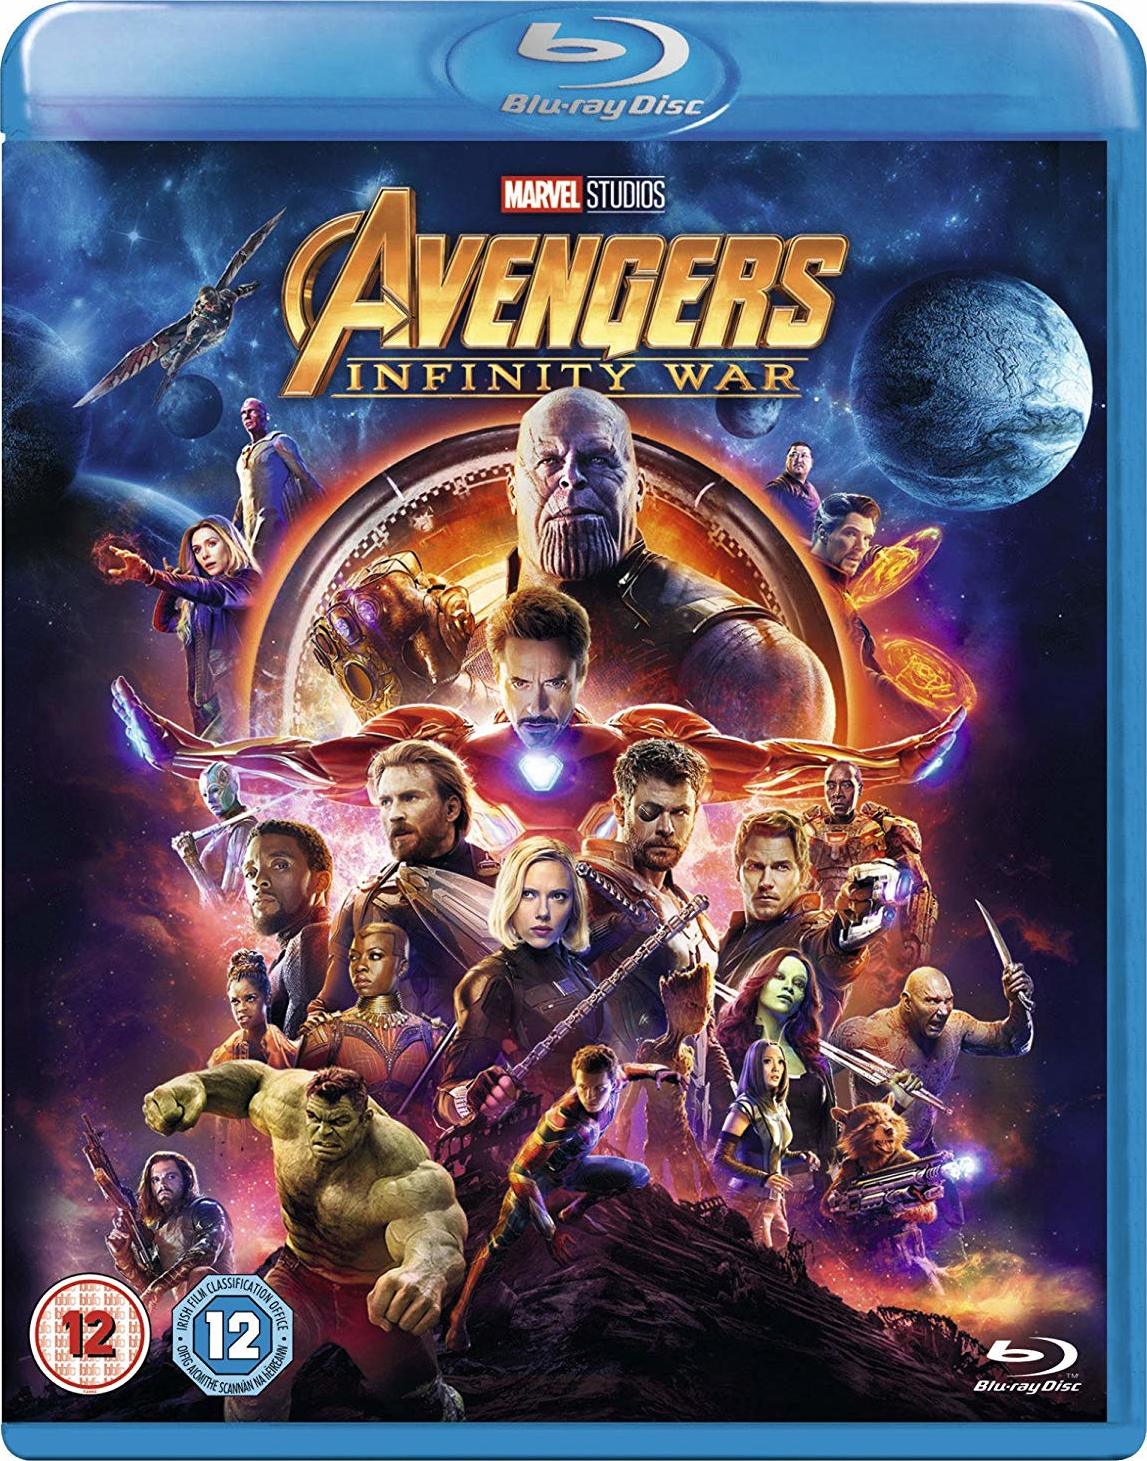 复仇者联盟3：无限战争【3D原盘DIY次世代国语+简繁/双语动态特效字幕+菜单汉化修改】 Avengers Infinity War 2018 1080p 3D Blu-ray AVC DTS-HD MA 7.1-Huan@HDSky [50.95 GB]-1.jpg